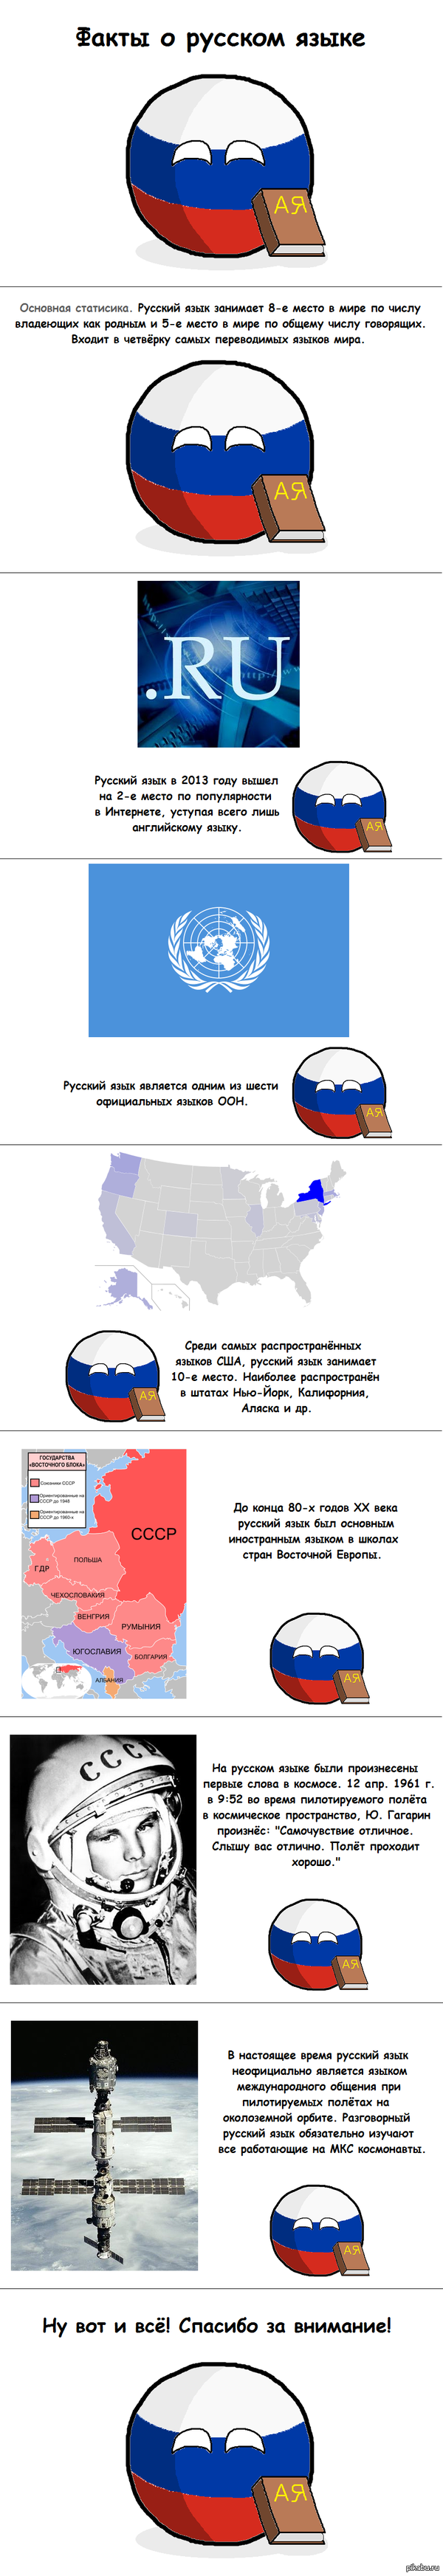 Факты о русском языке   countryballs, русский язык, факты, длиннопост